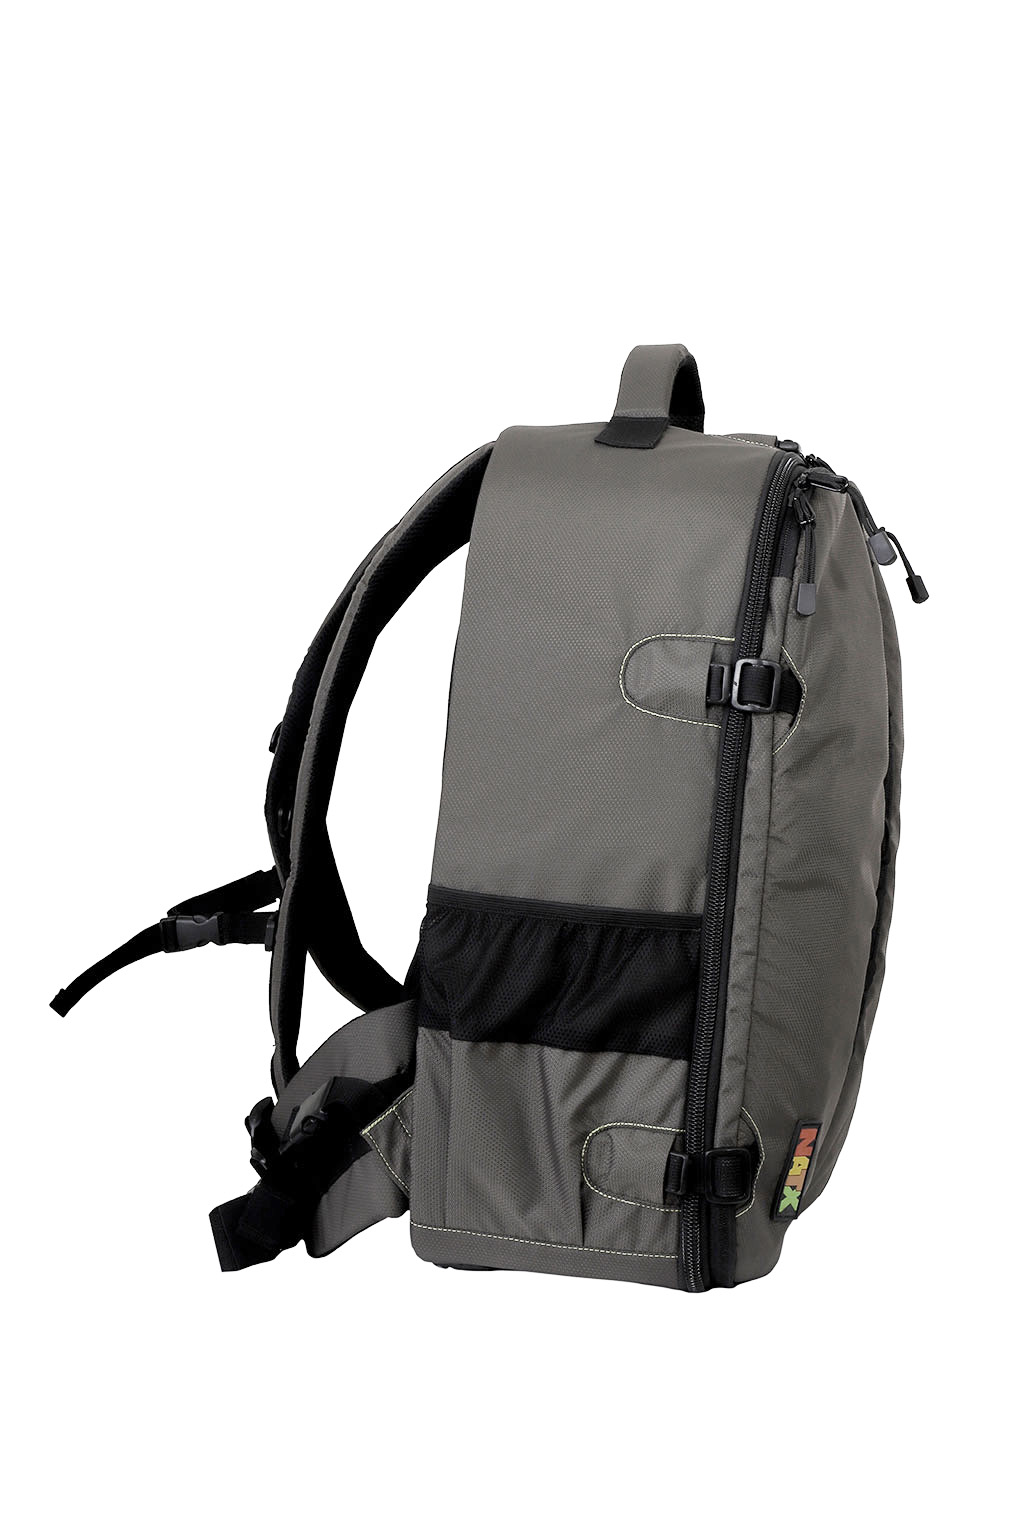 NATX K9 Lite Camera Bag - Elephant Grey - NATX Bags